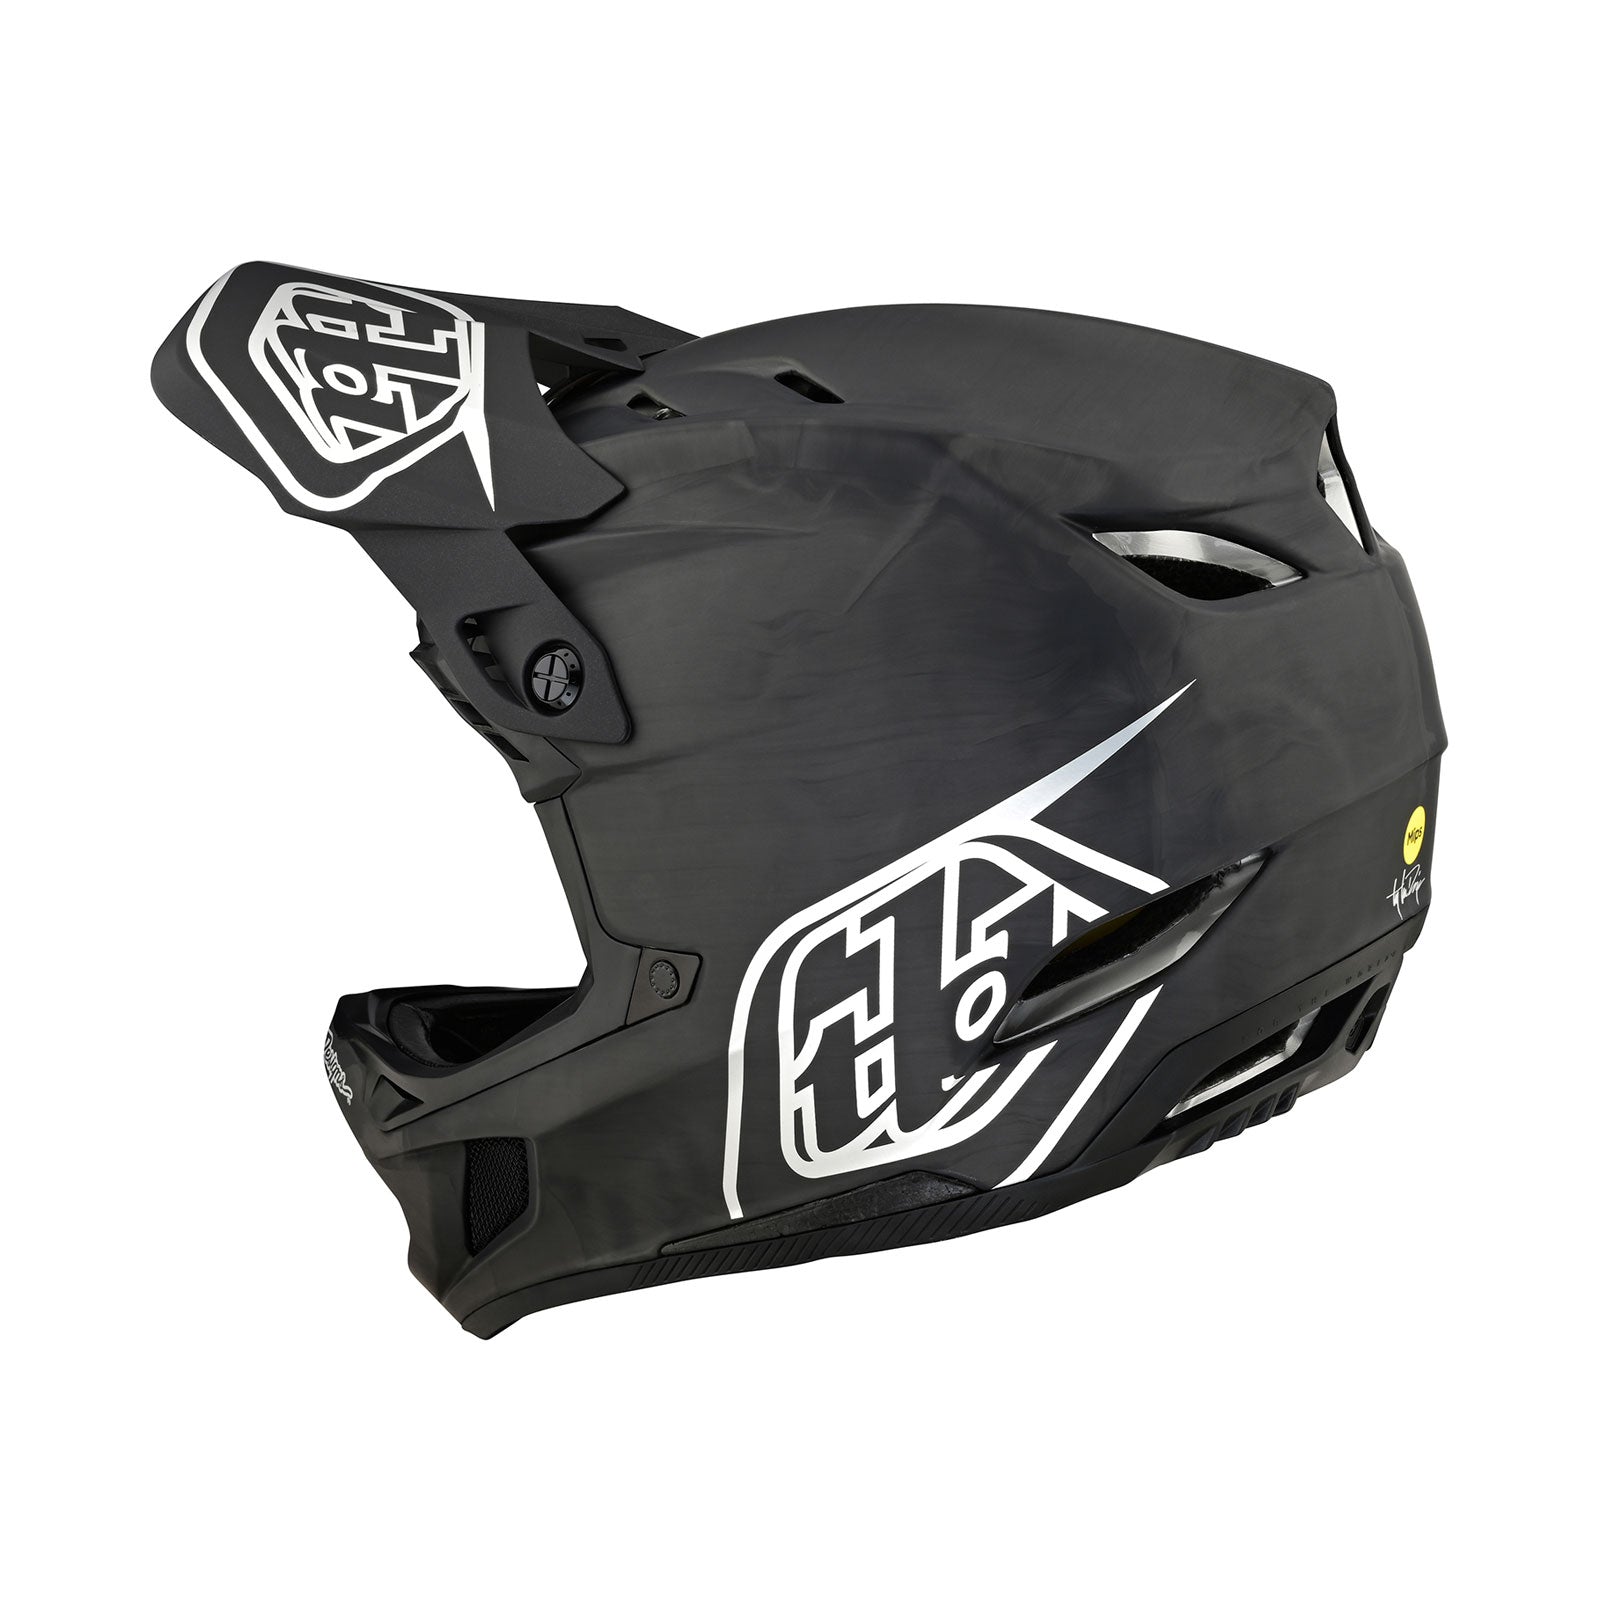 D4 Helmets – Troy Lee Designs